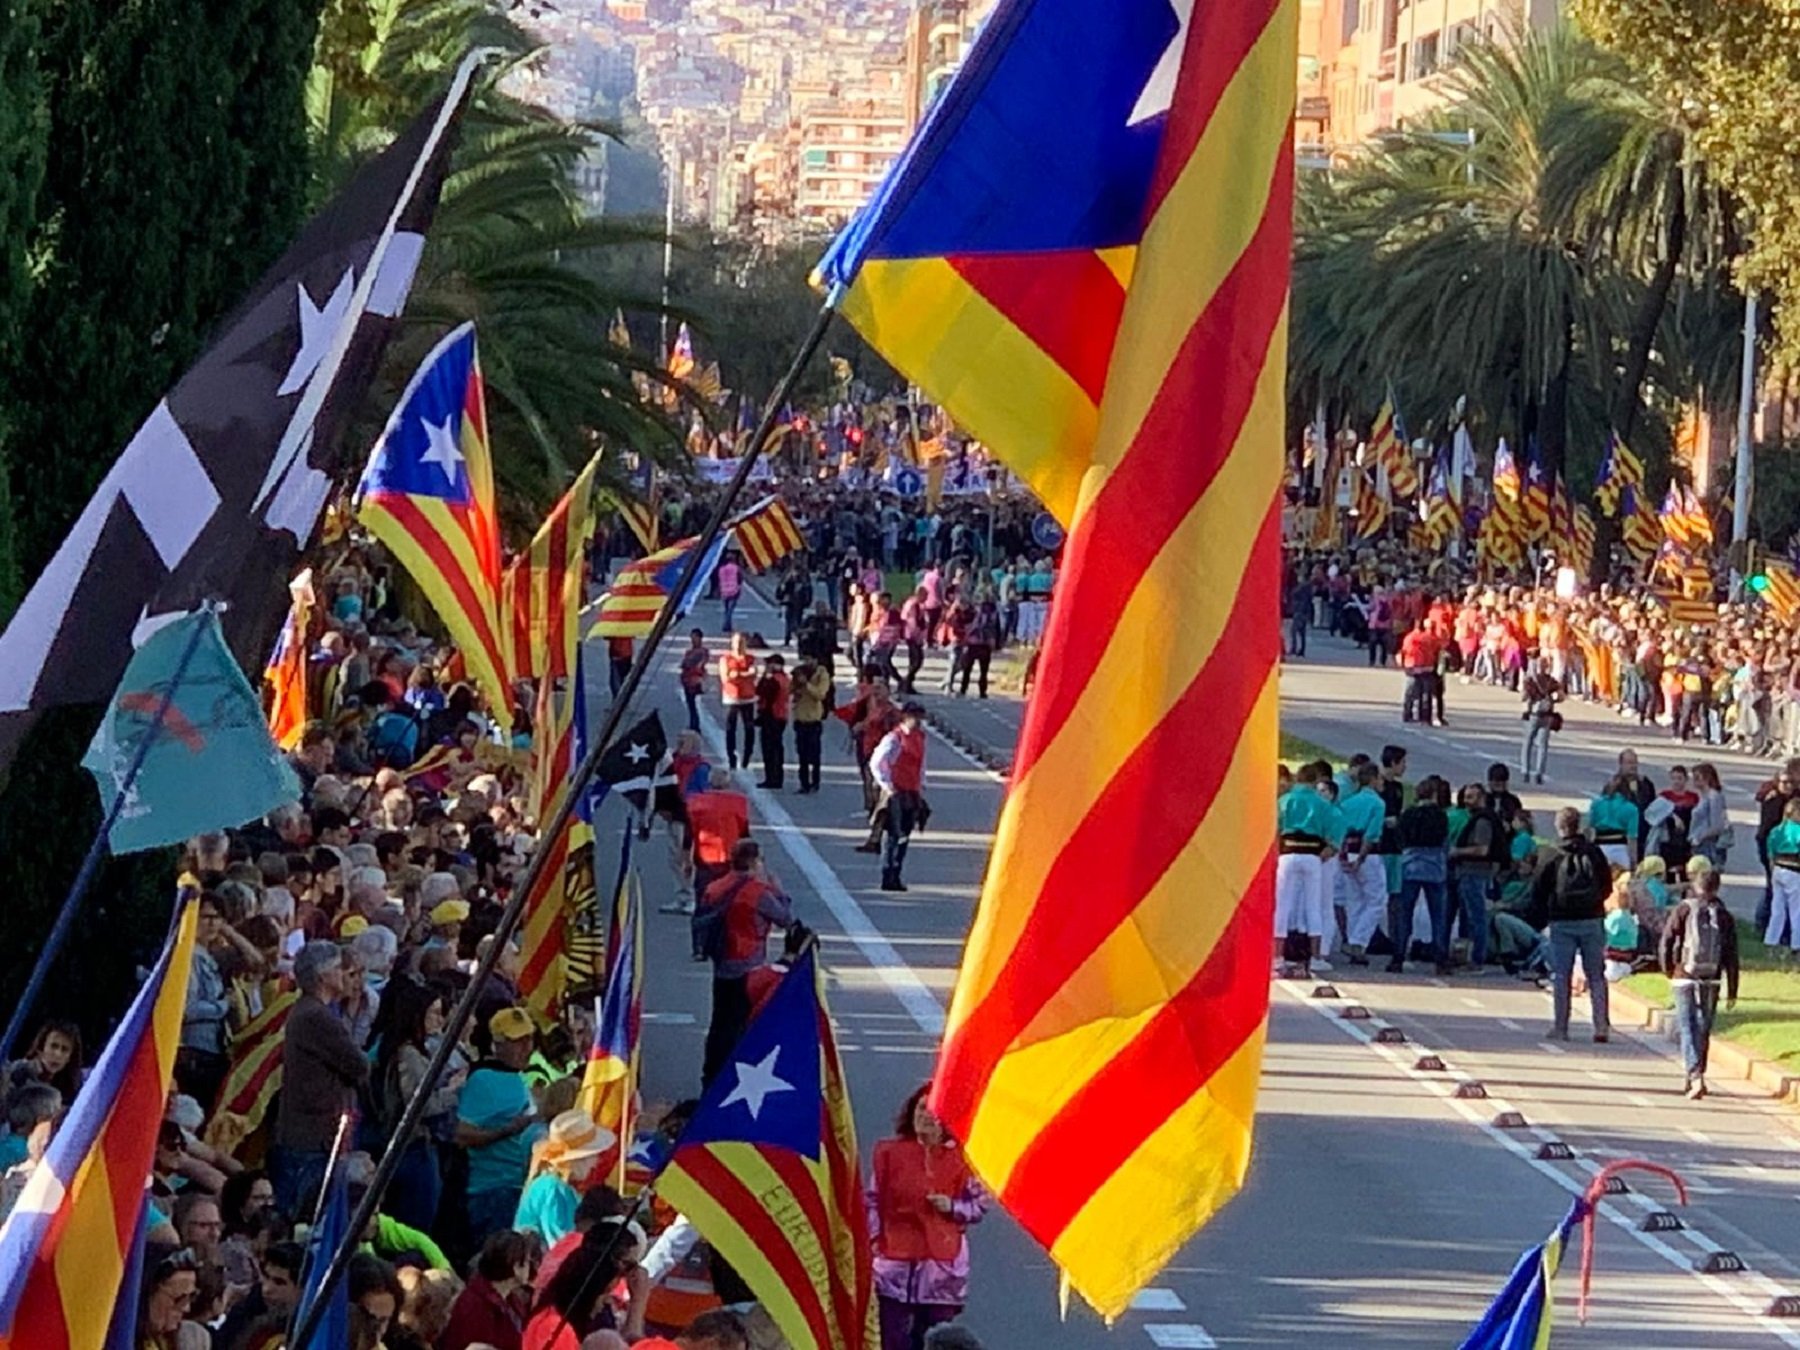 Para 'The New York Times', Catalunya es el eje central de las elecciones del 10-N